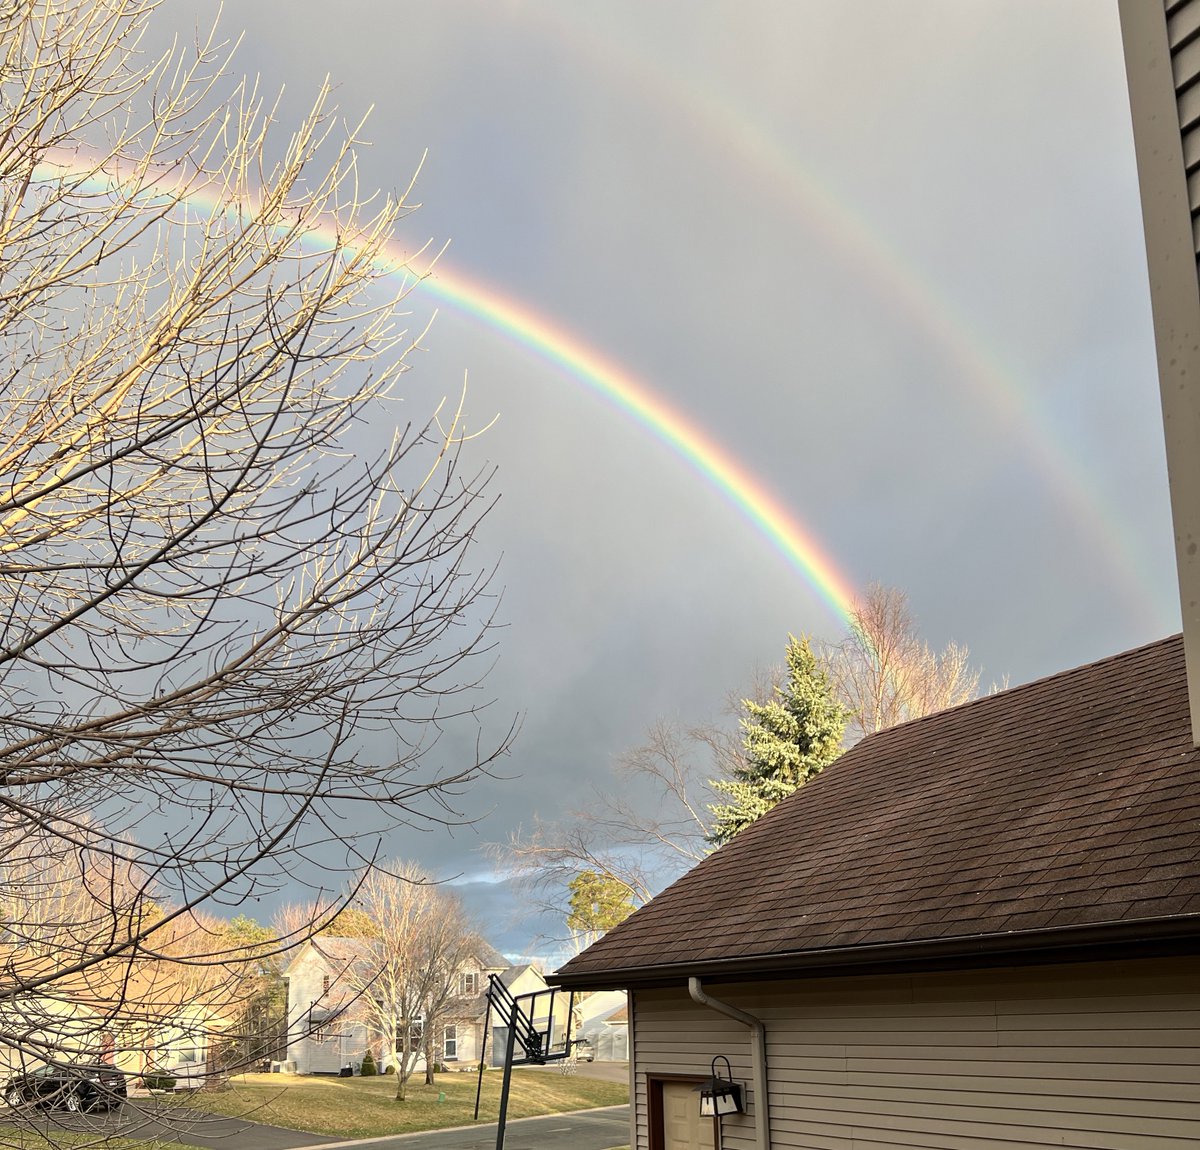 We got a double rainbow